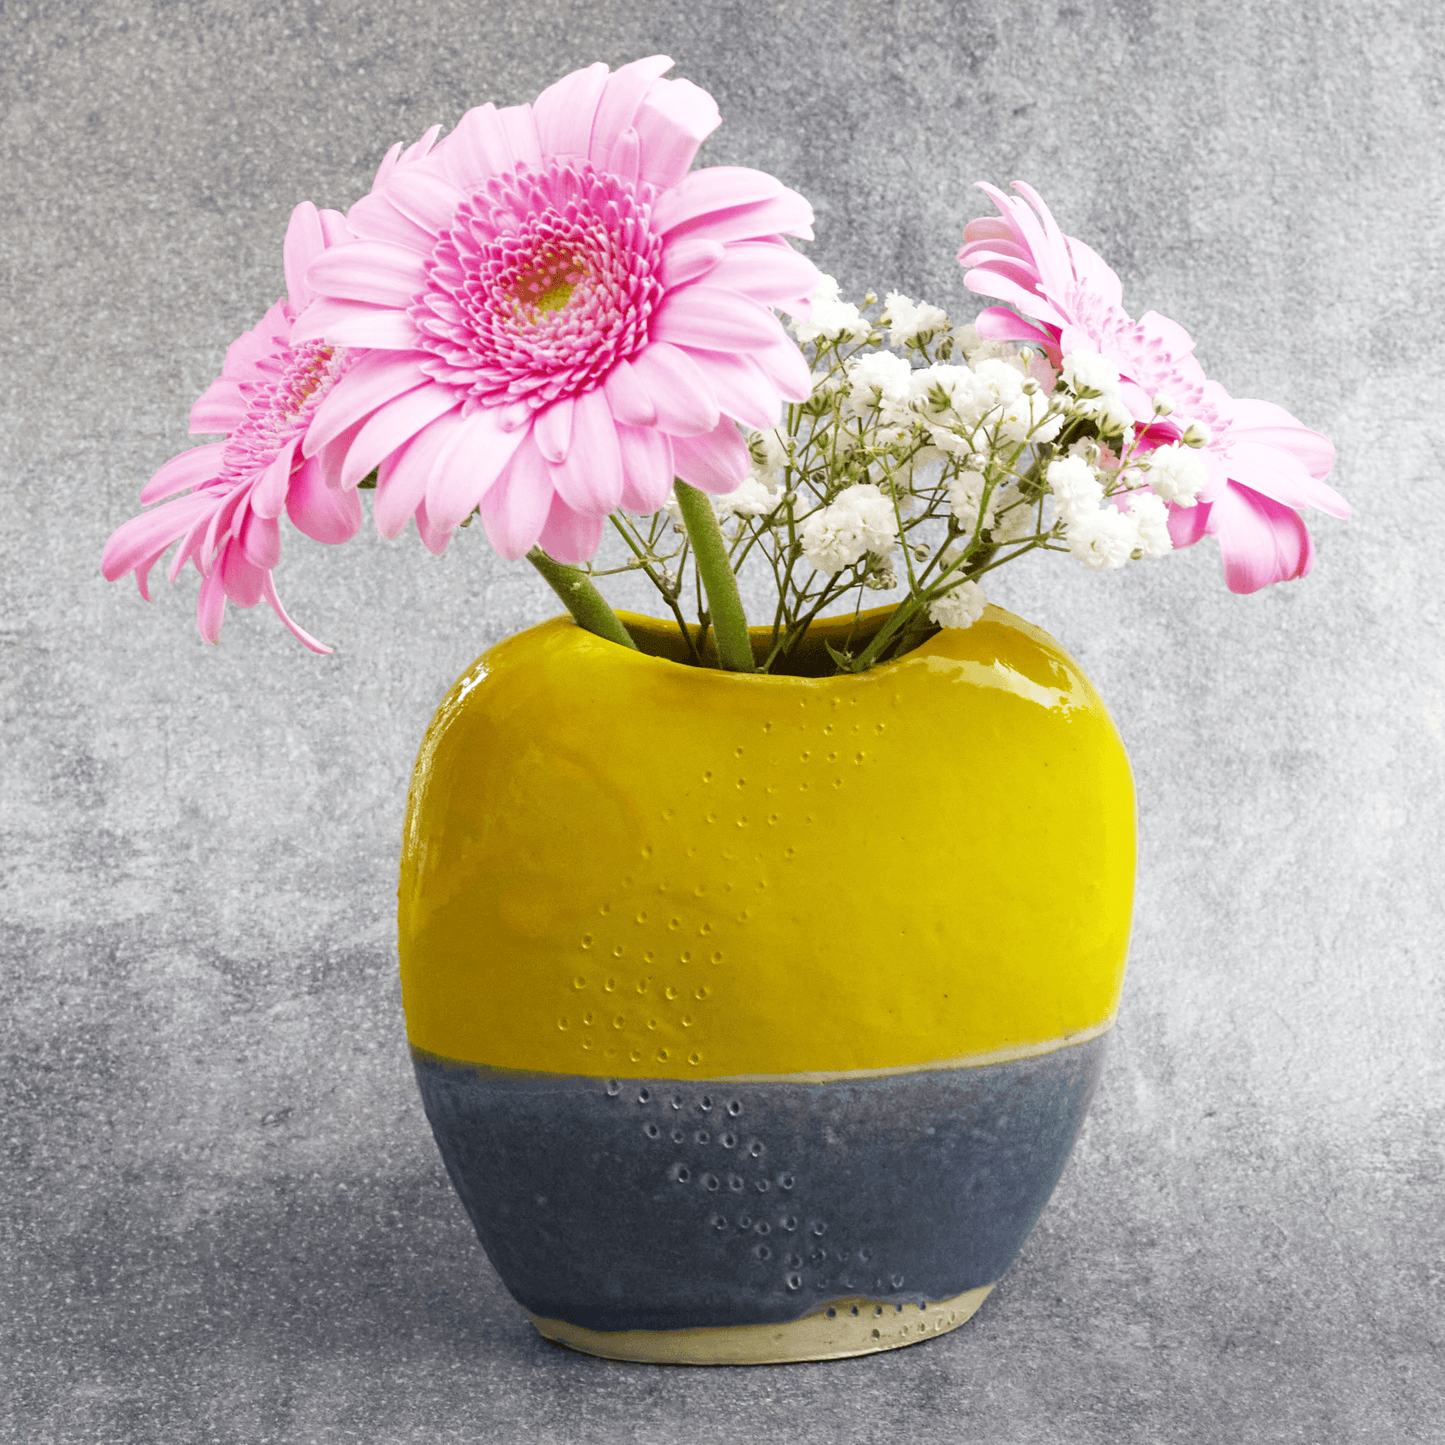 Photo du vase Cloé en situation, avec des fleurs fraîches, illustrant son utilisation dans la décoration